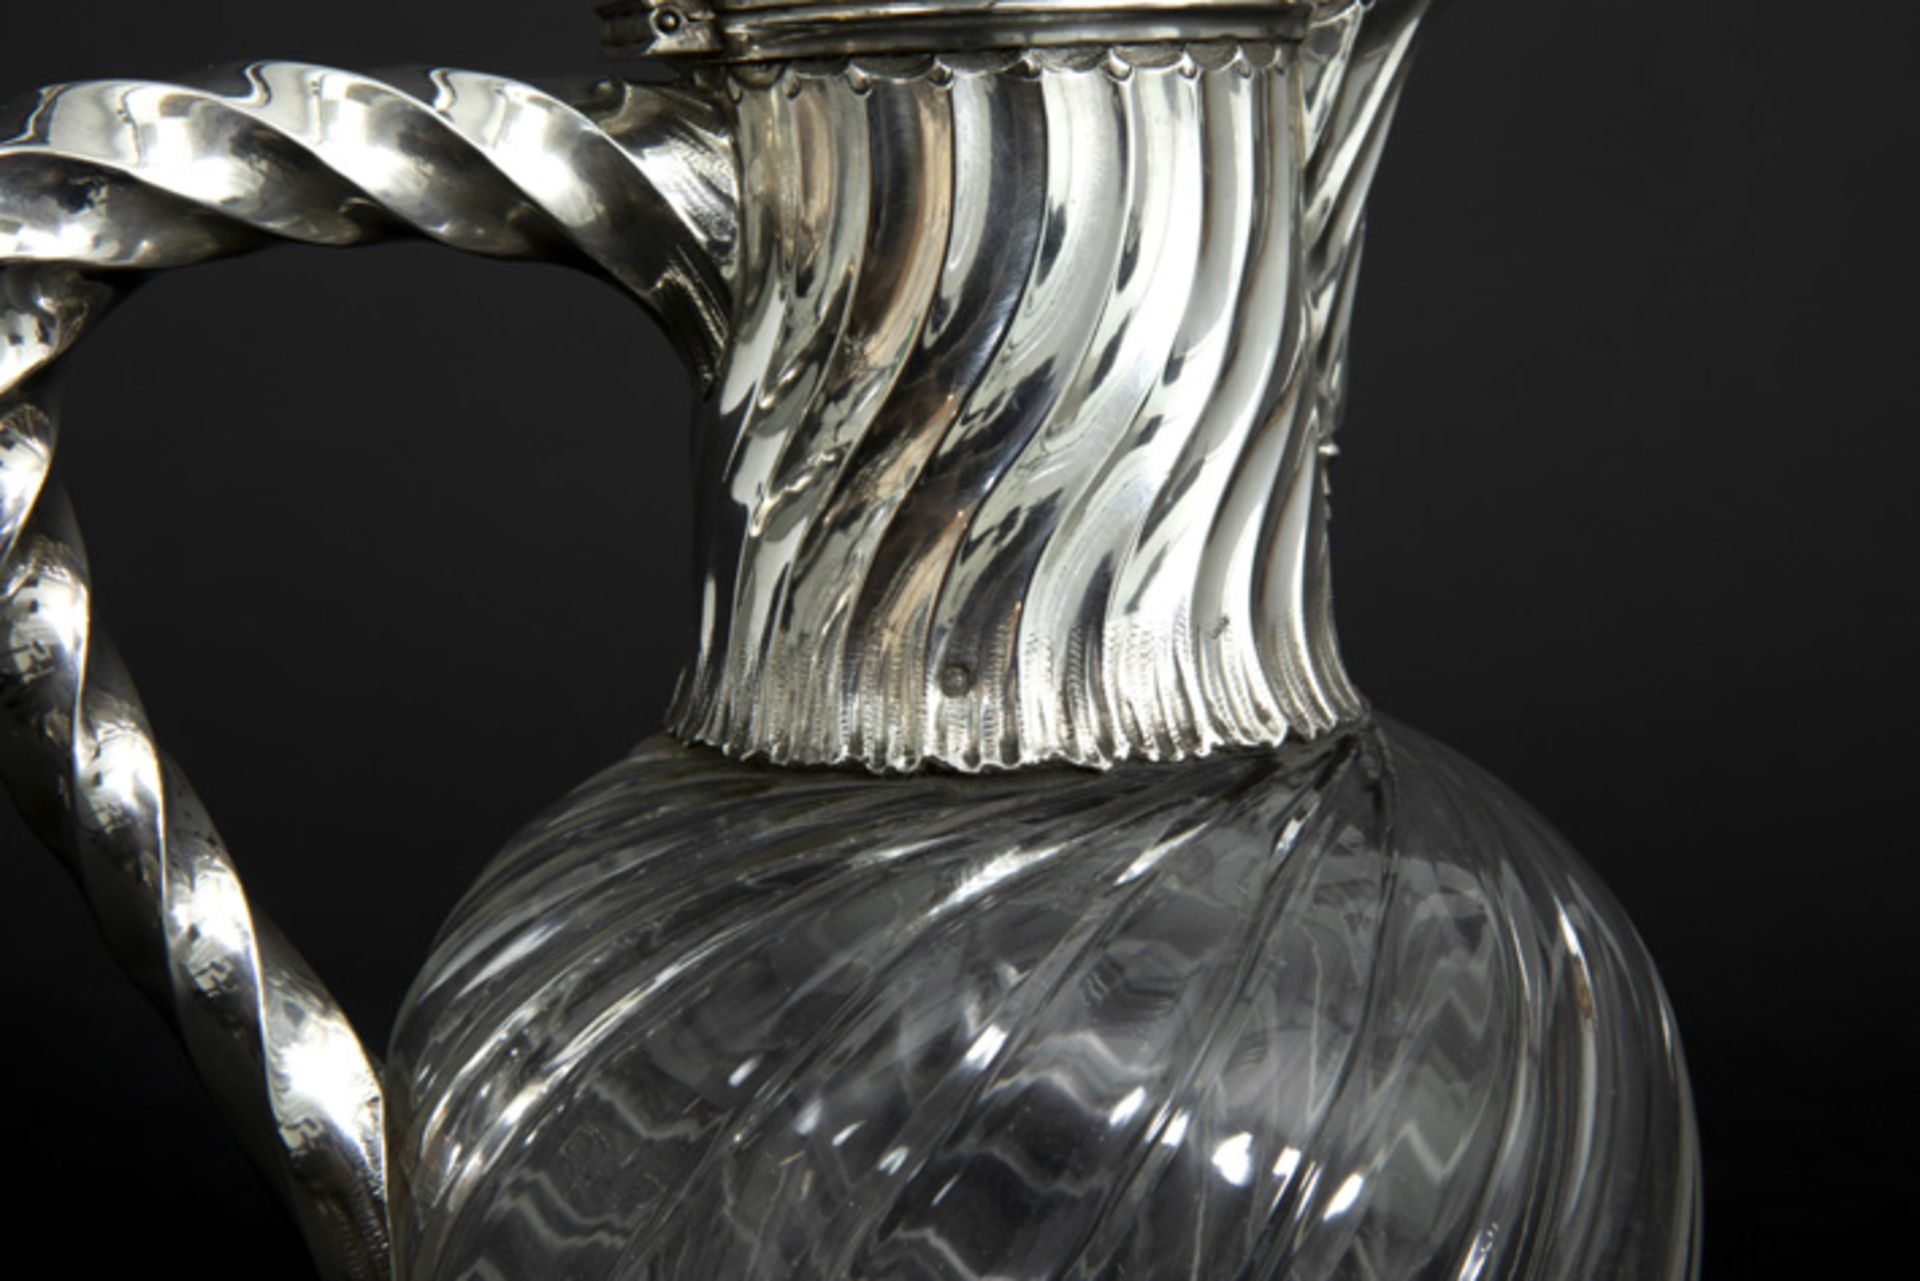 FRANKRIJK - 19° EEUW fraai paar wijnkaraffen in kleurl kristal en massief zilver, [...] - Image 3 of 4